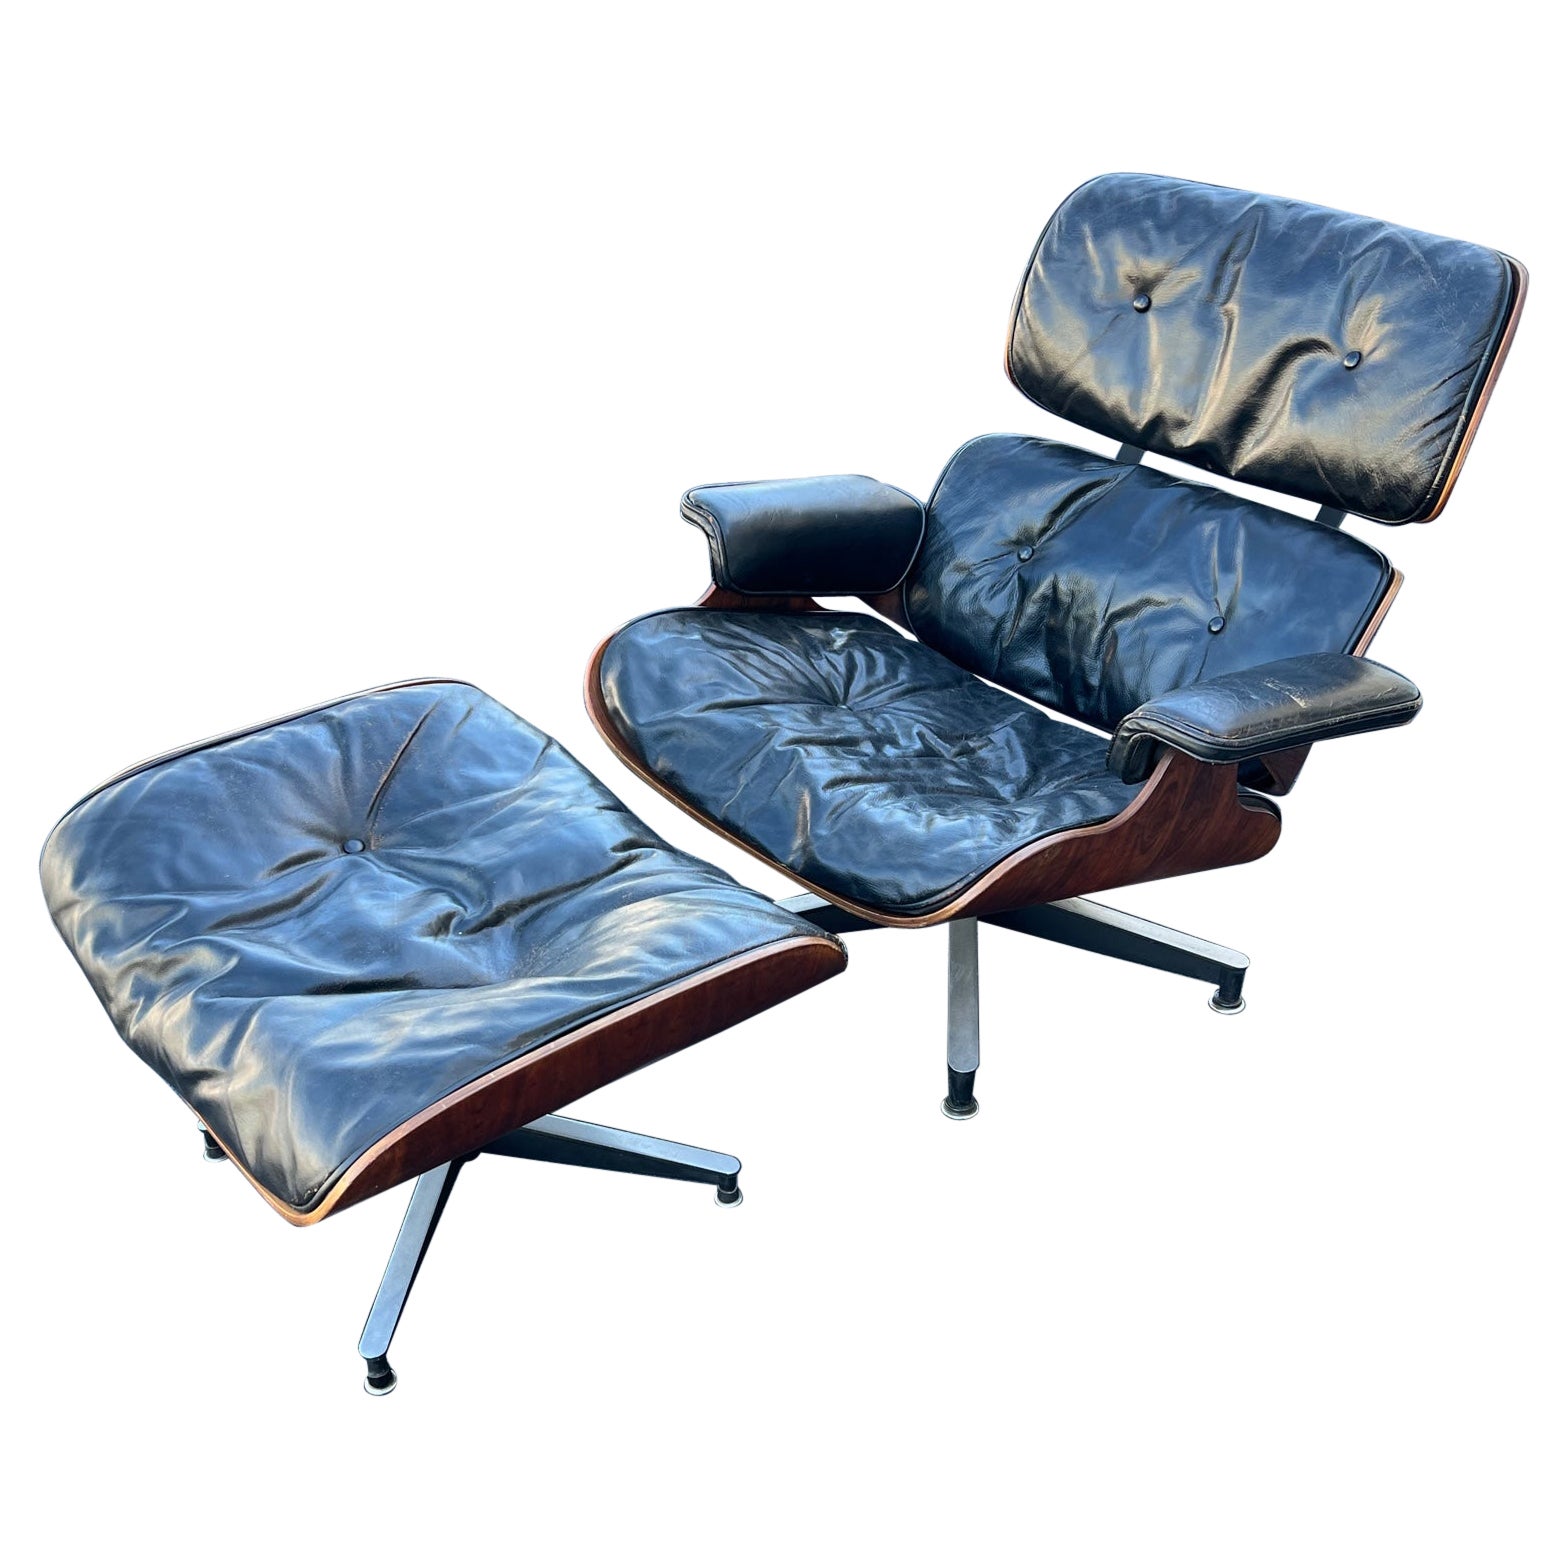 Chaise longue et pouf Charles Eames Herman Miller des années 1950